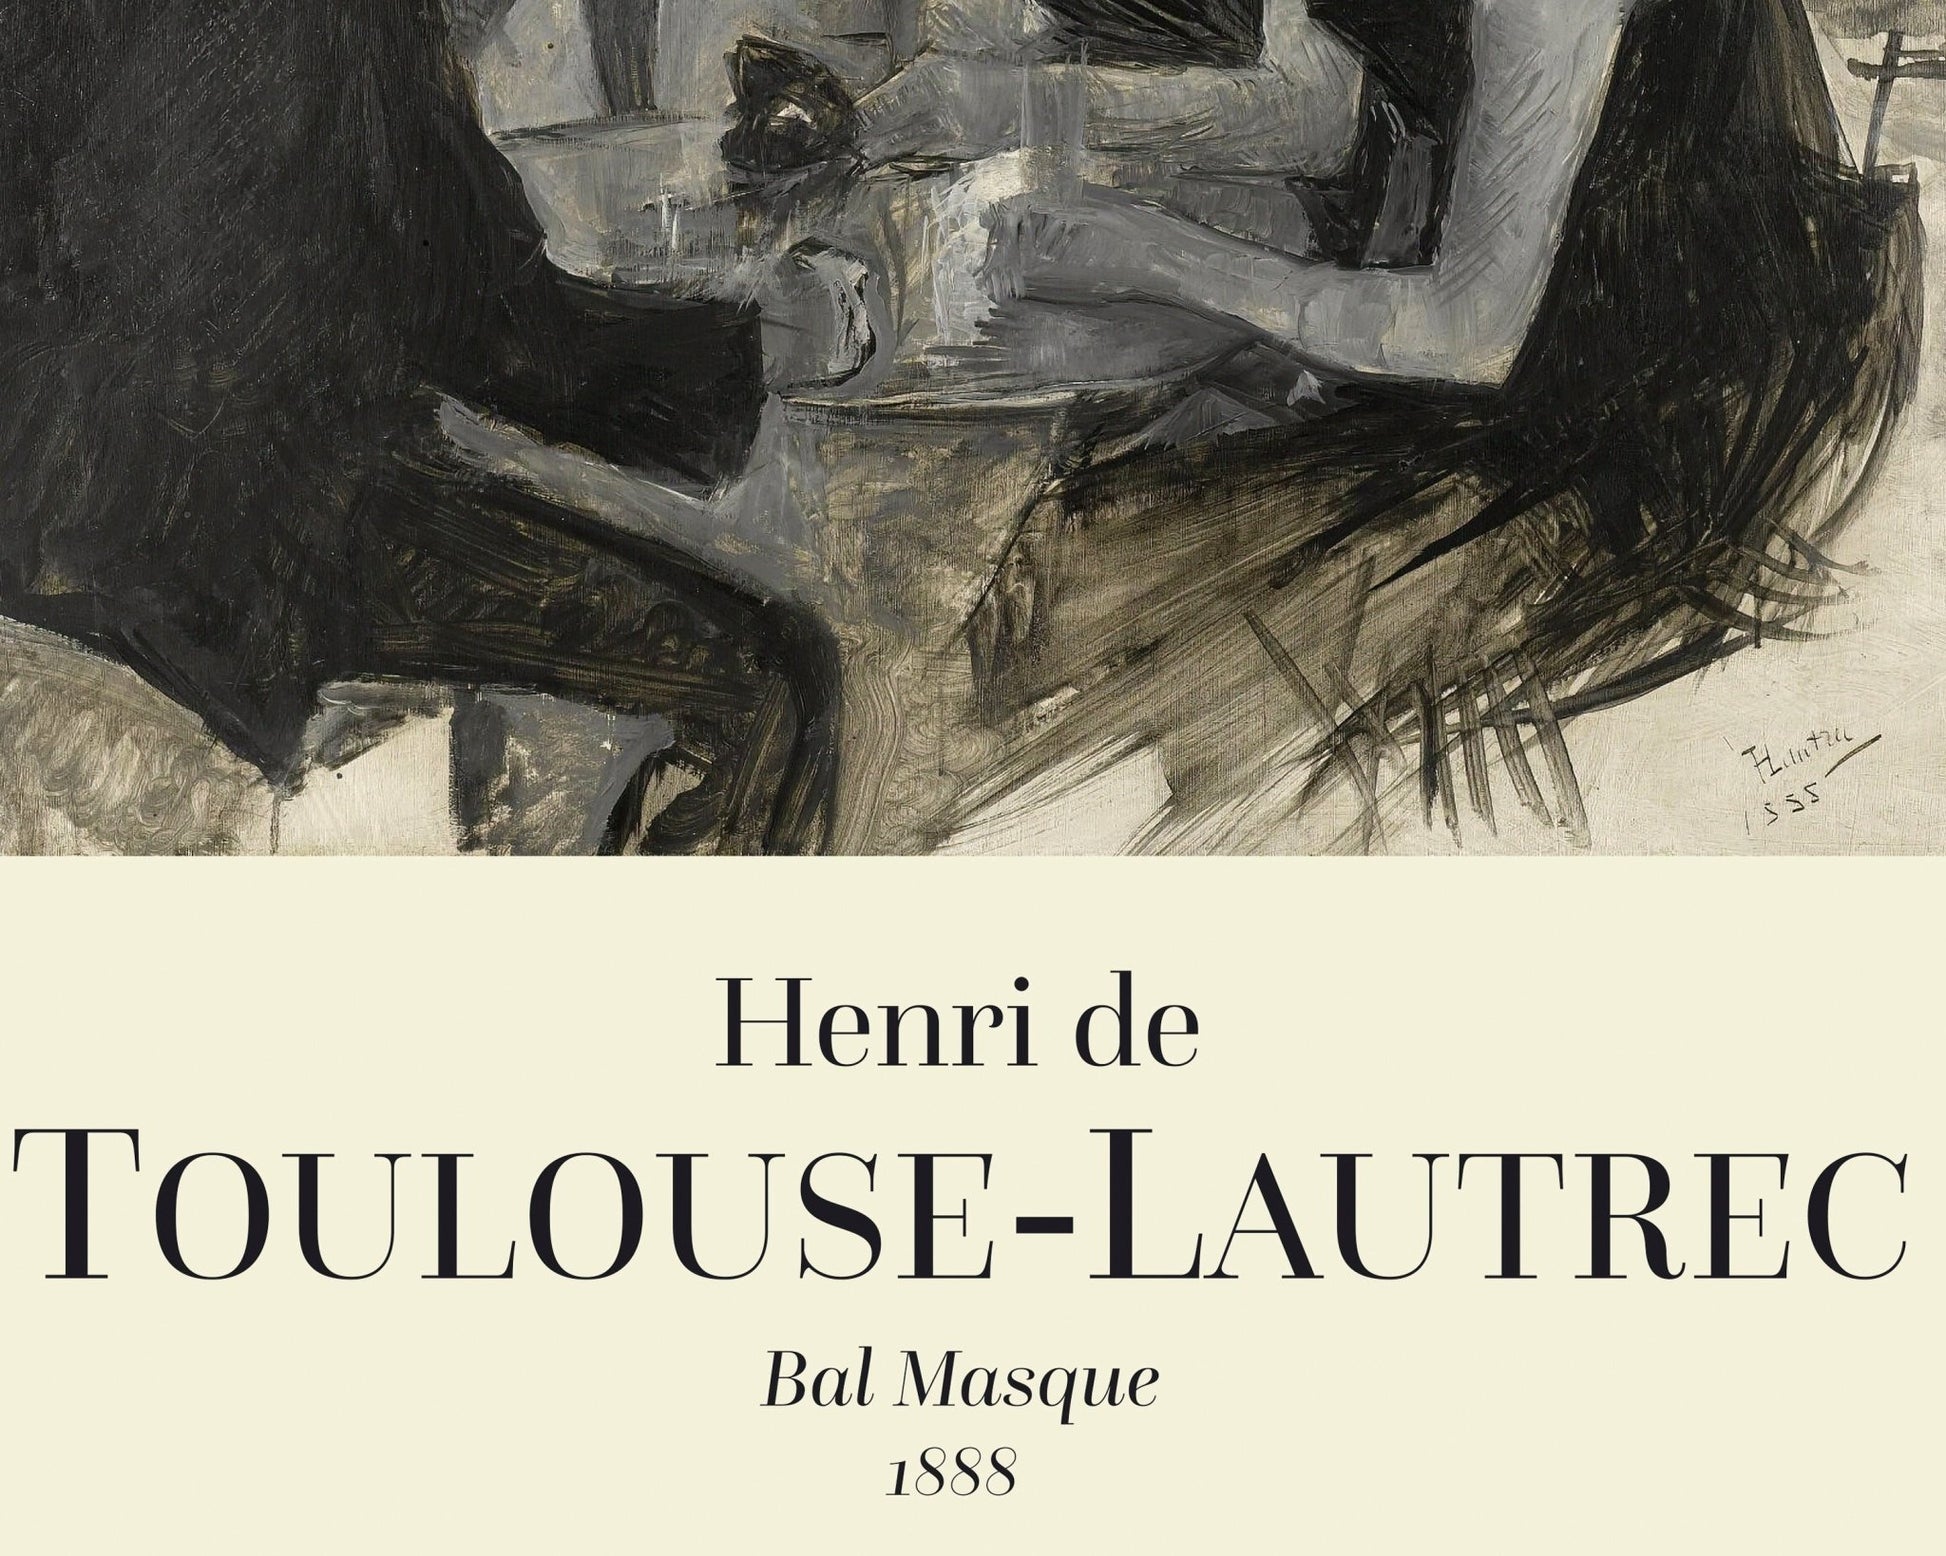 Henri de Toulouse - Lautrec "Bal masqué" (c.1888) - Mabon Gallery